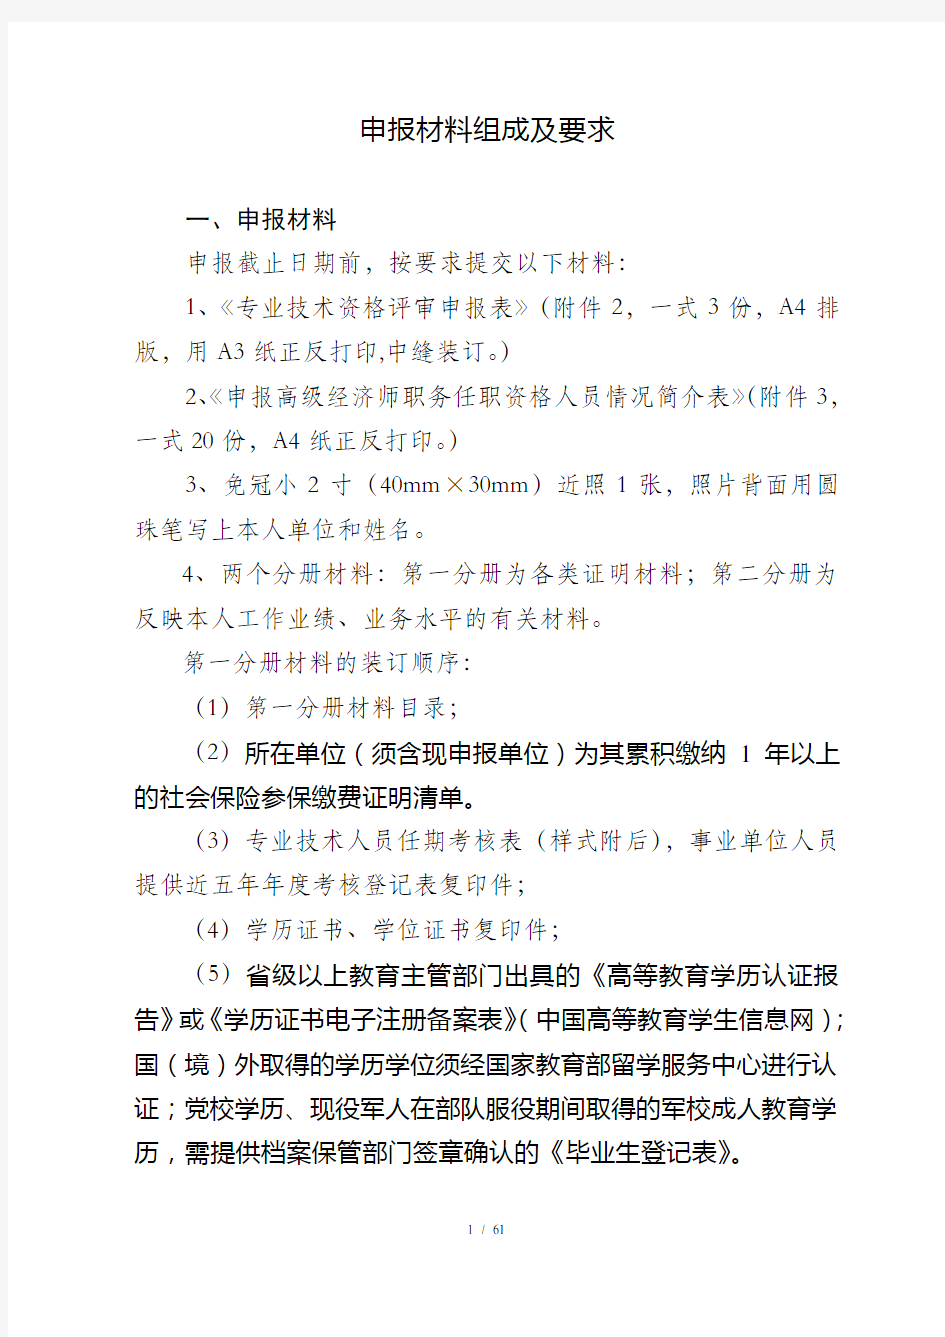 江苏省经济专业高级经济师资格条件申报材料组成及要求